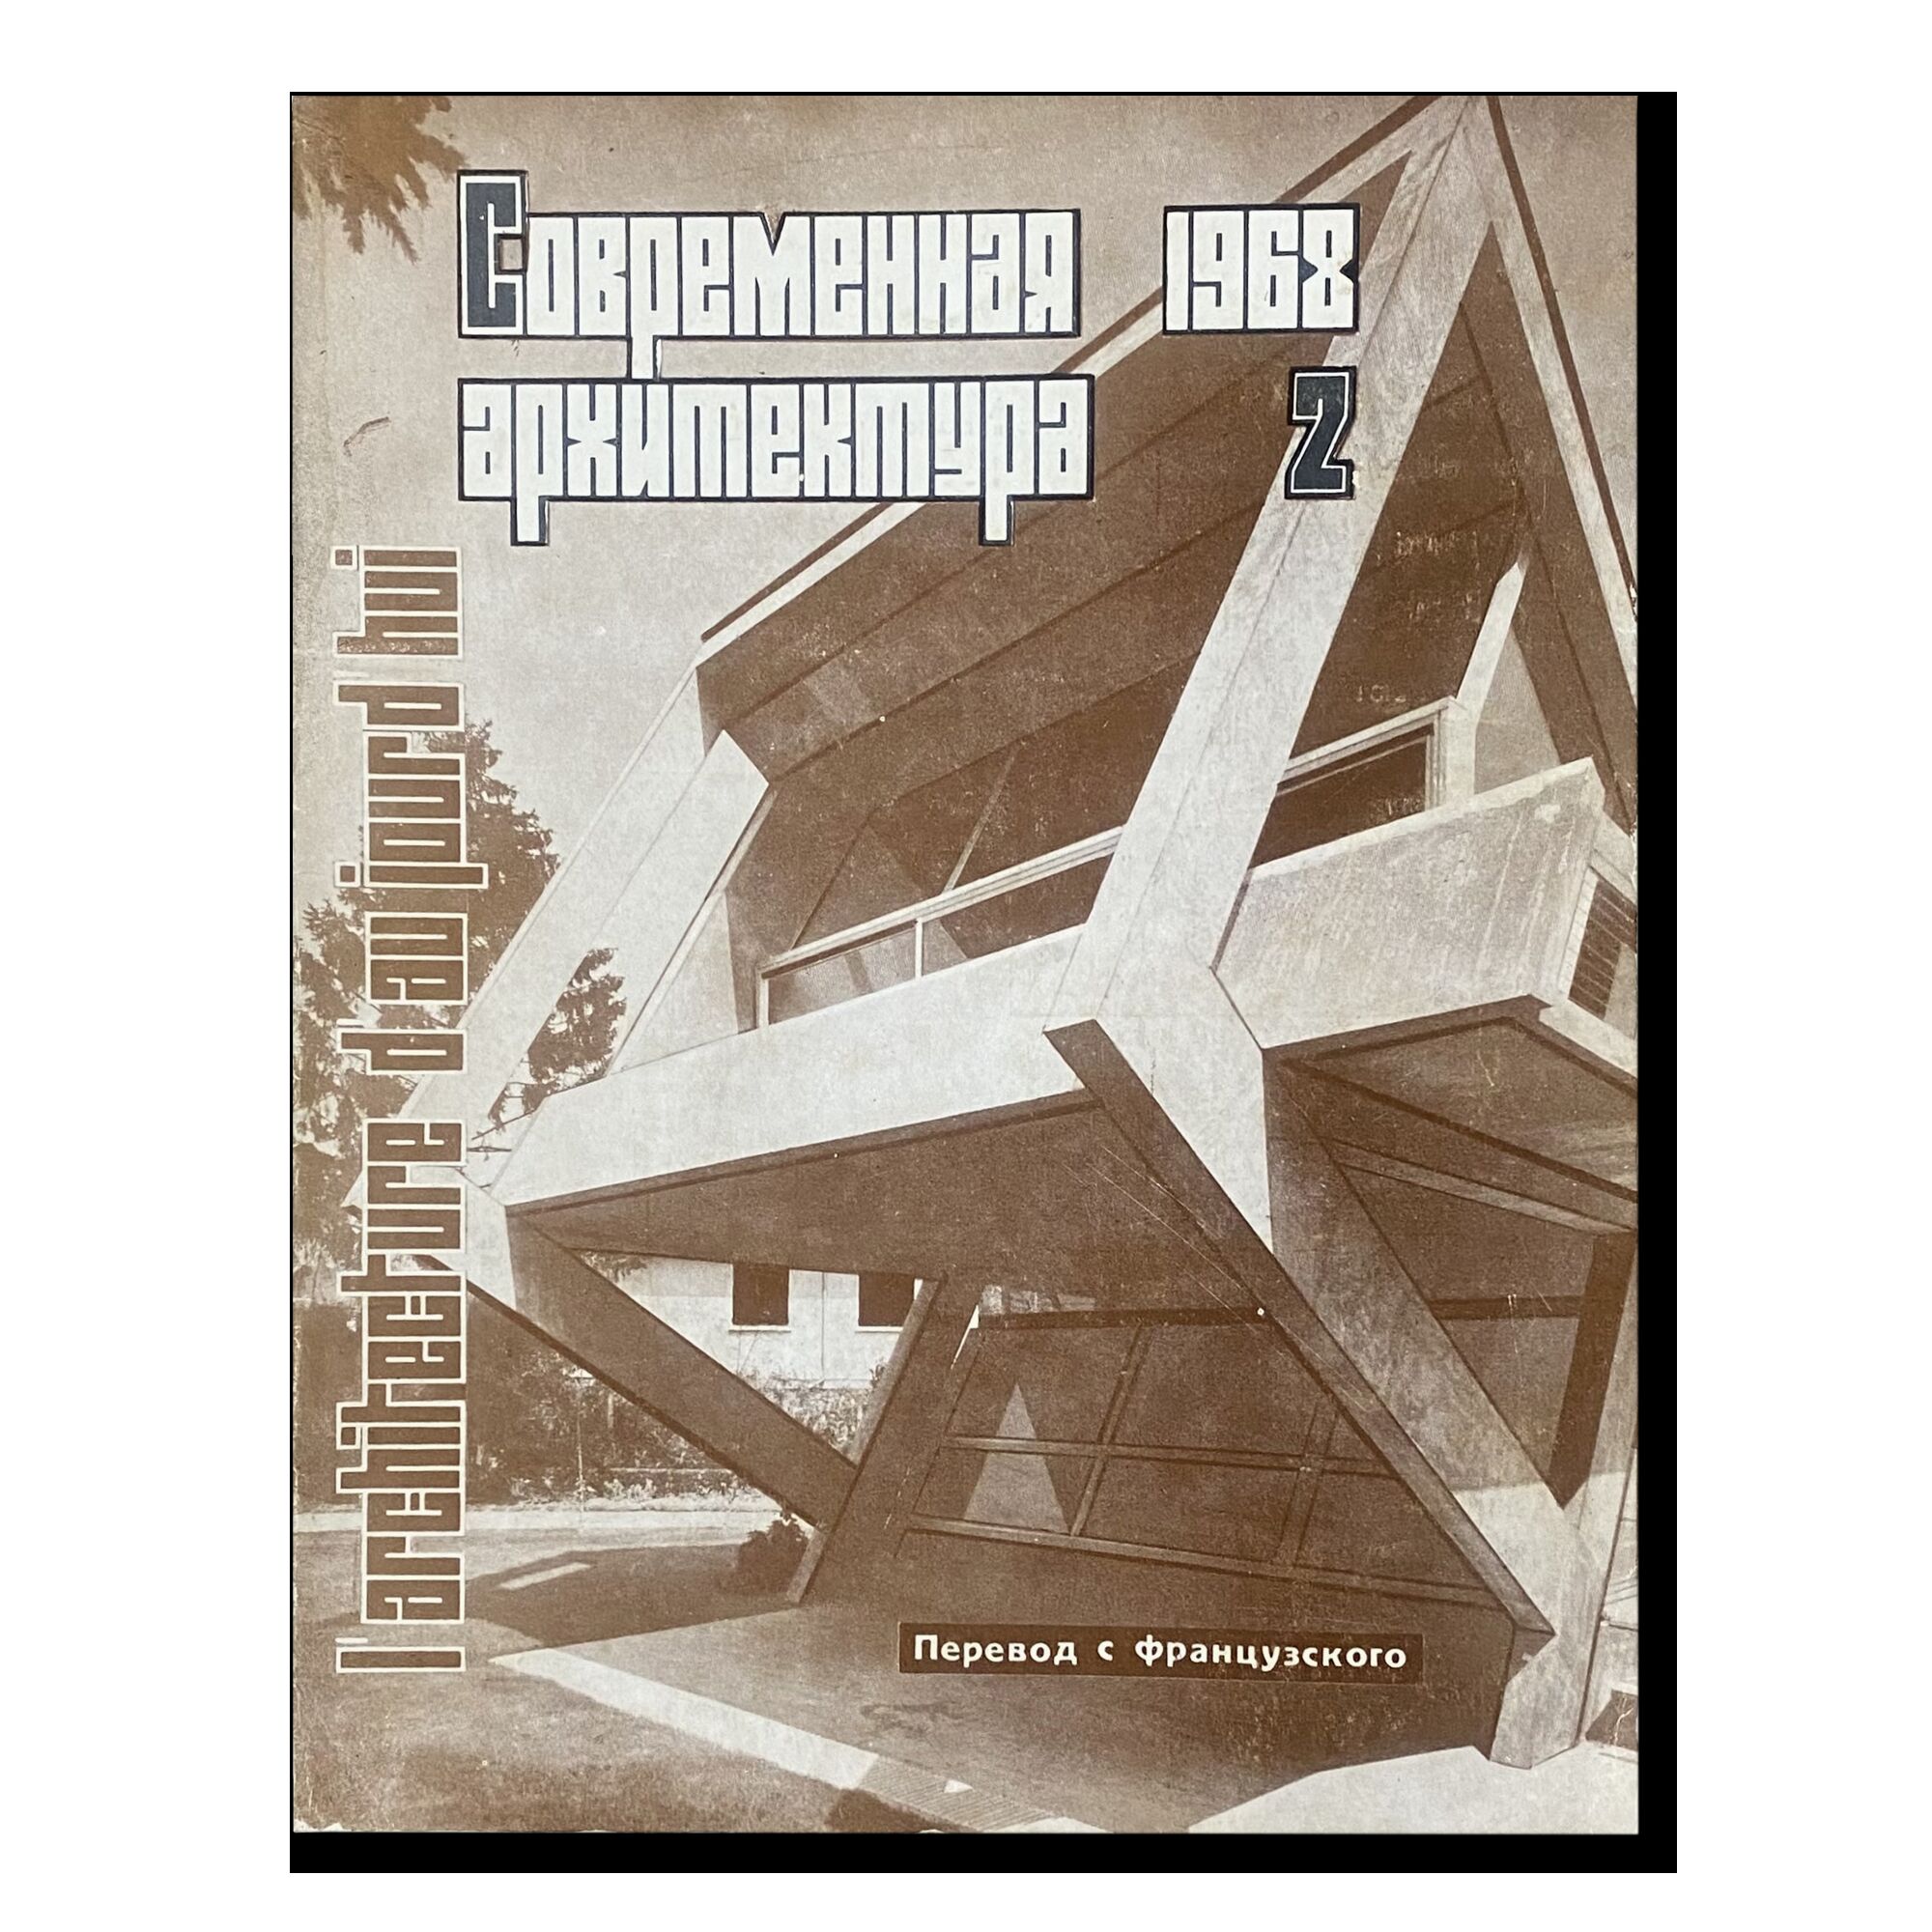 Журнал "Современная архитектура" (2) 1968